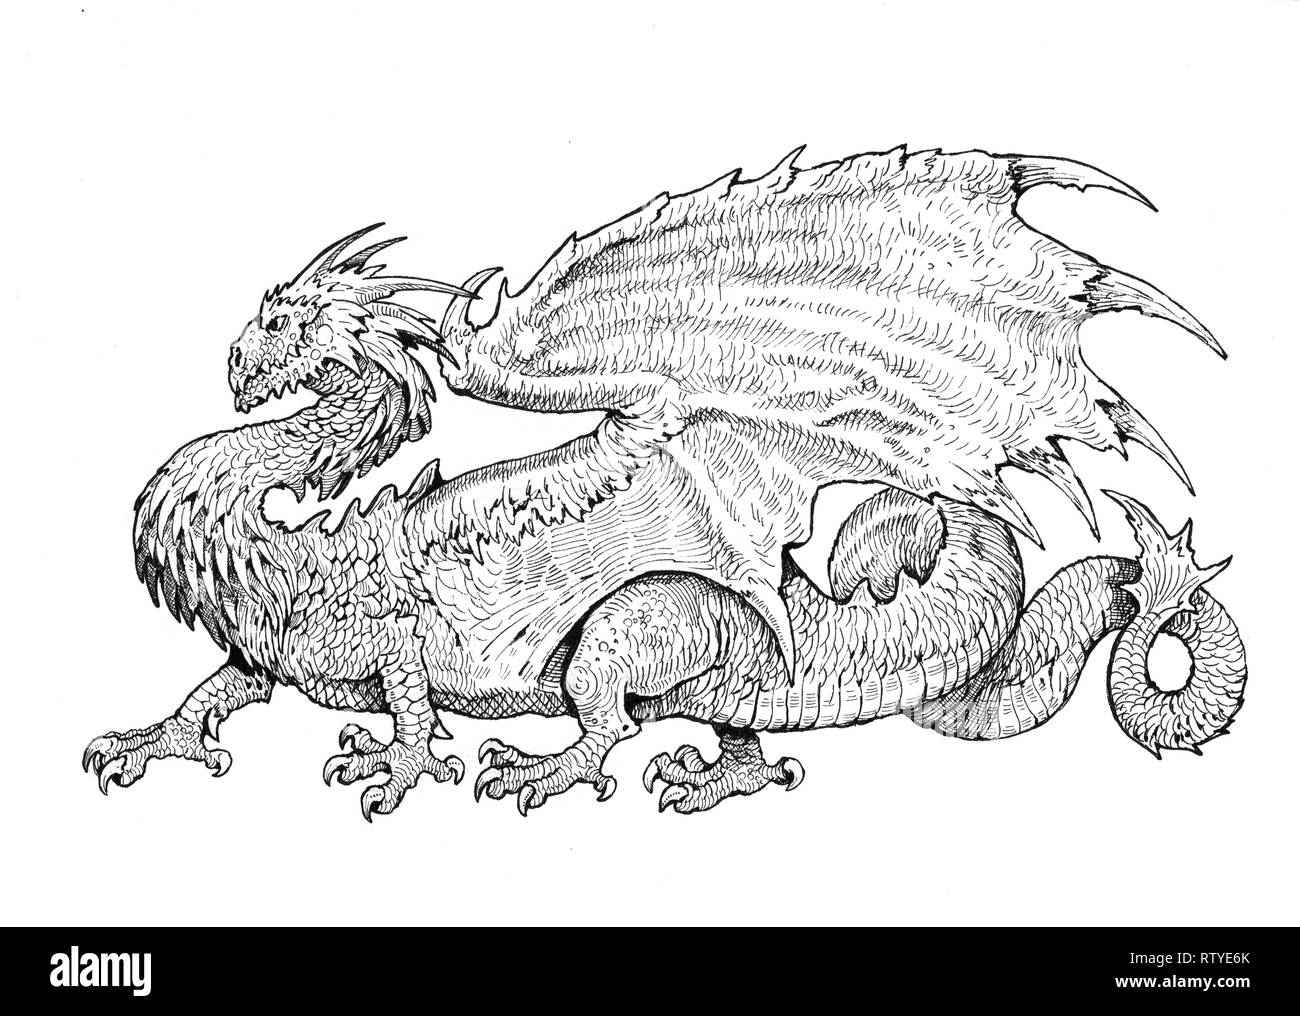 Avec des ailes de dragon. Illustration d'encre fantaisie. Banque D'Images